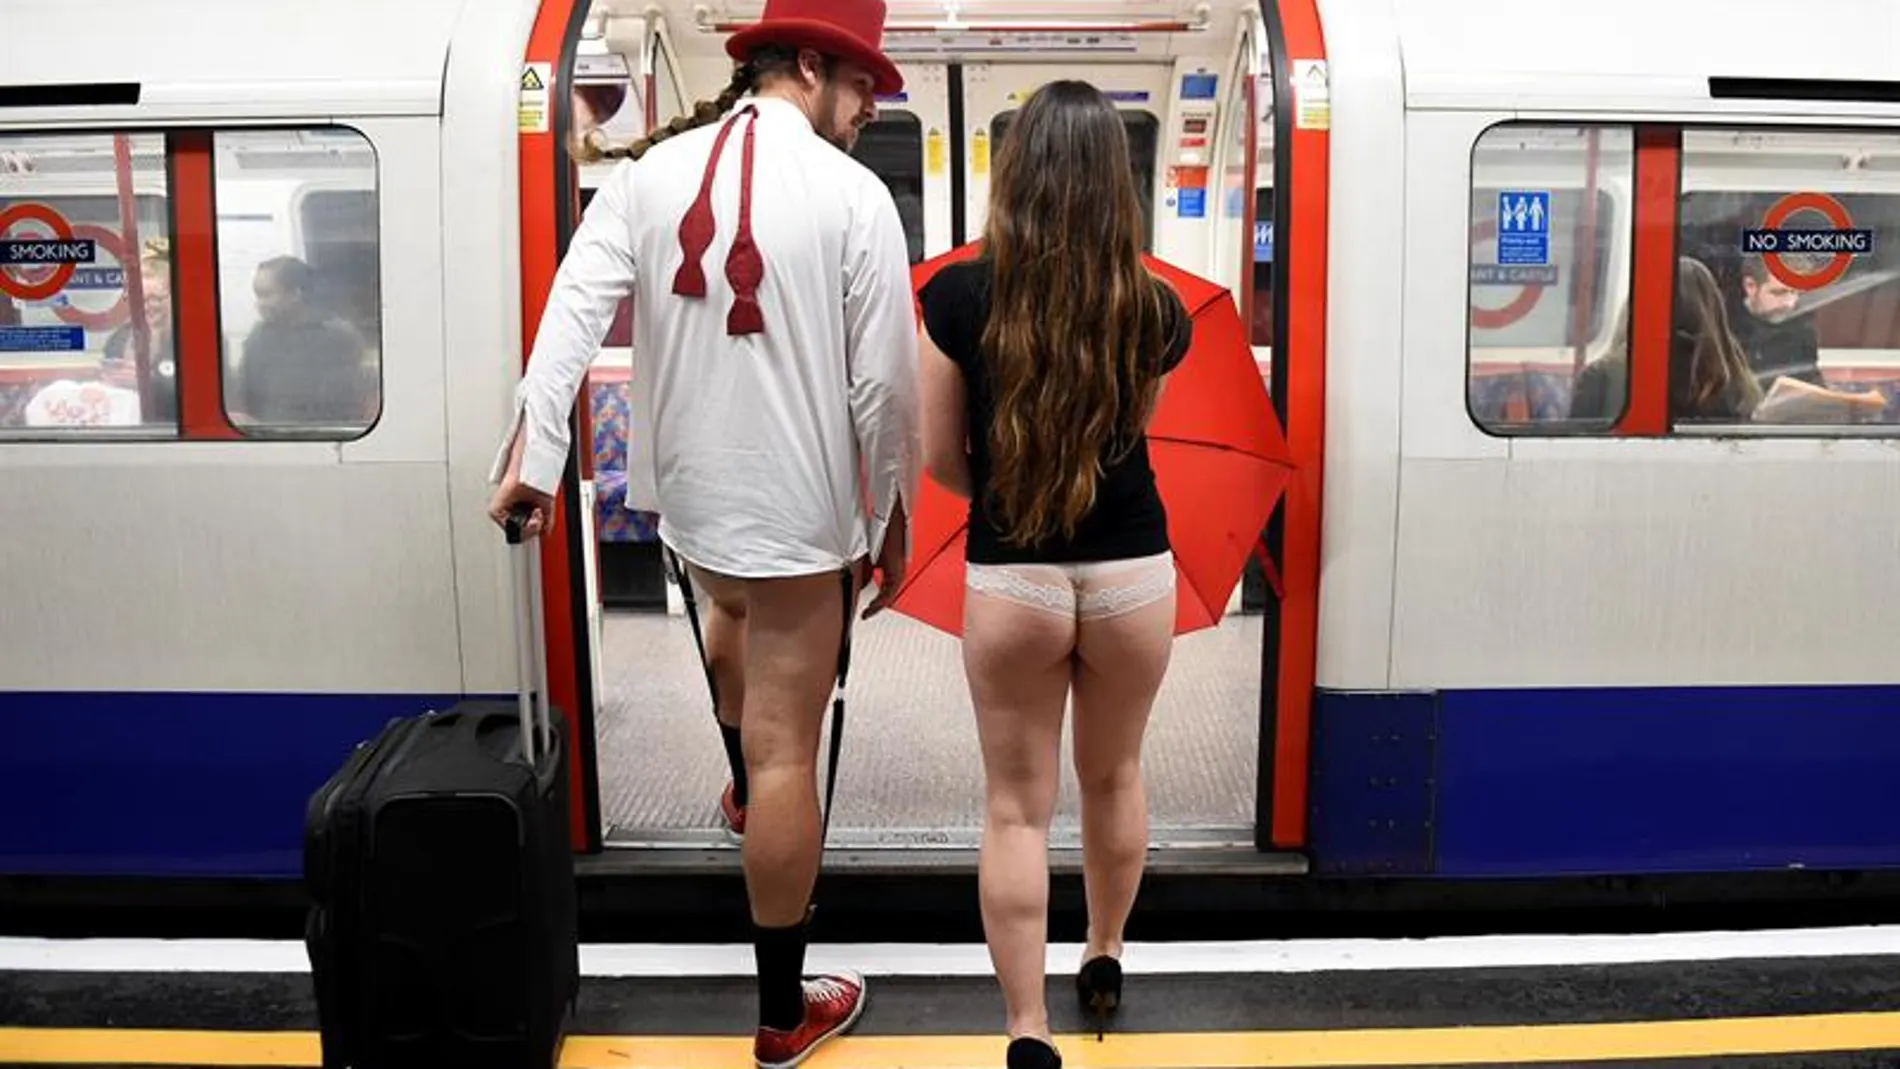 Dos ciudadanos de Londres en el día mundial sin pantalones